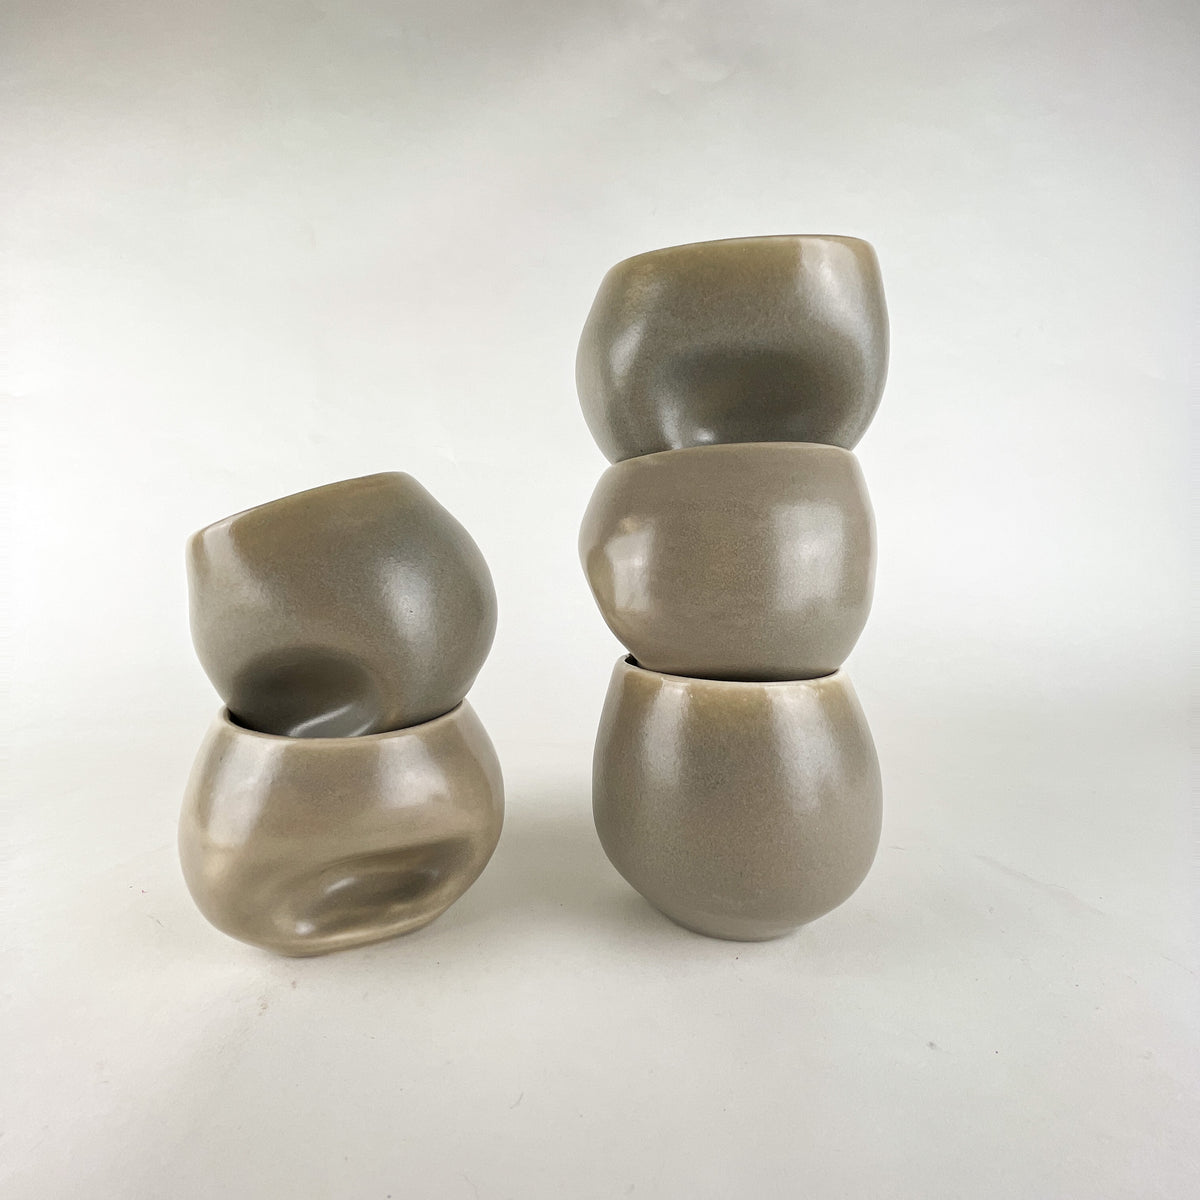 <!--3600--!>Glassware - Ceramic Divot Cup